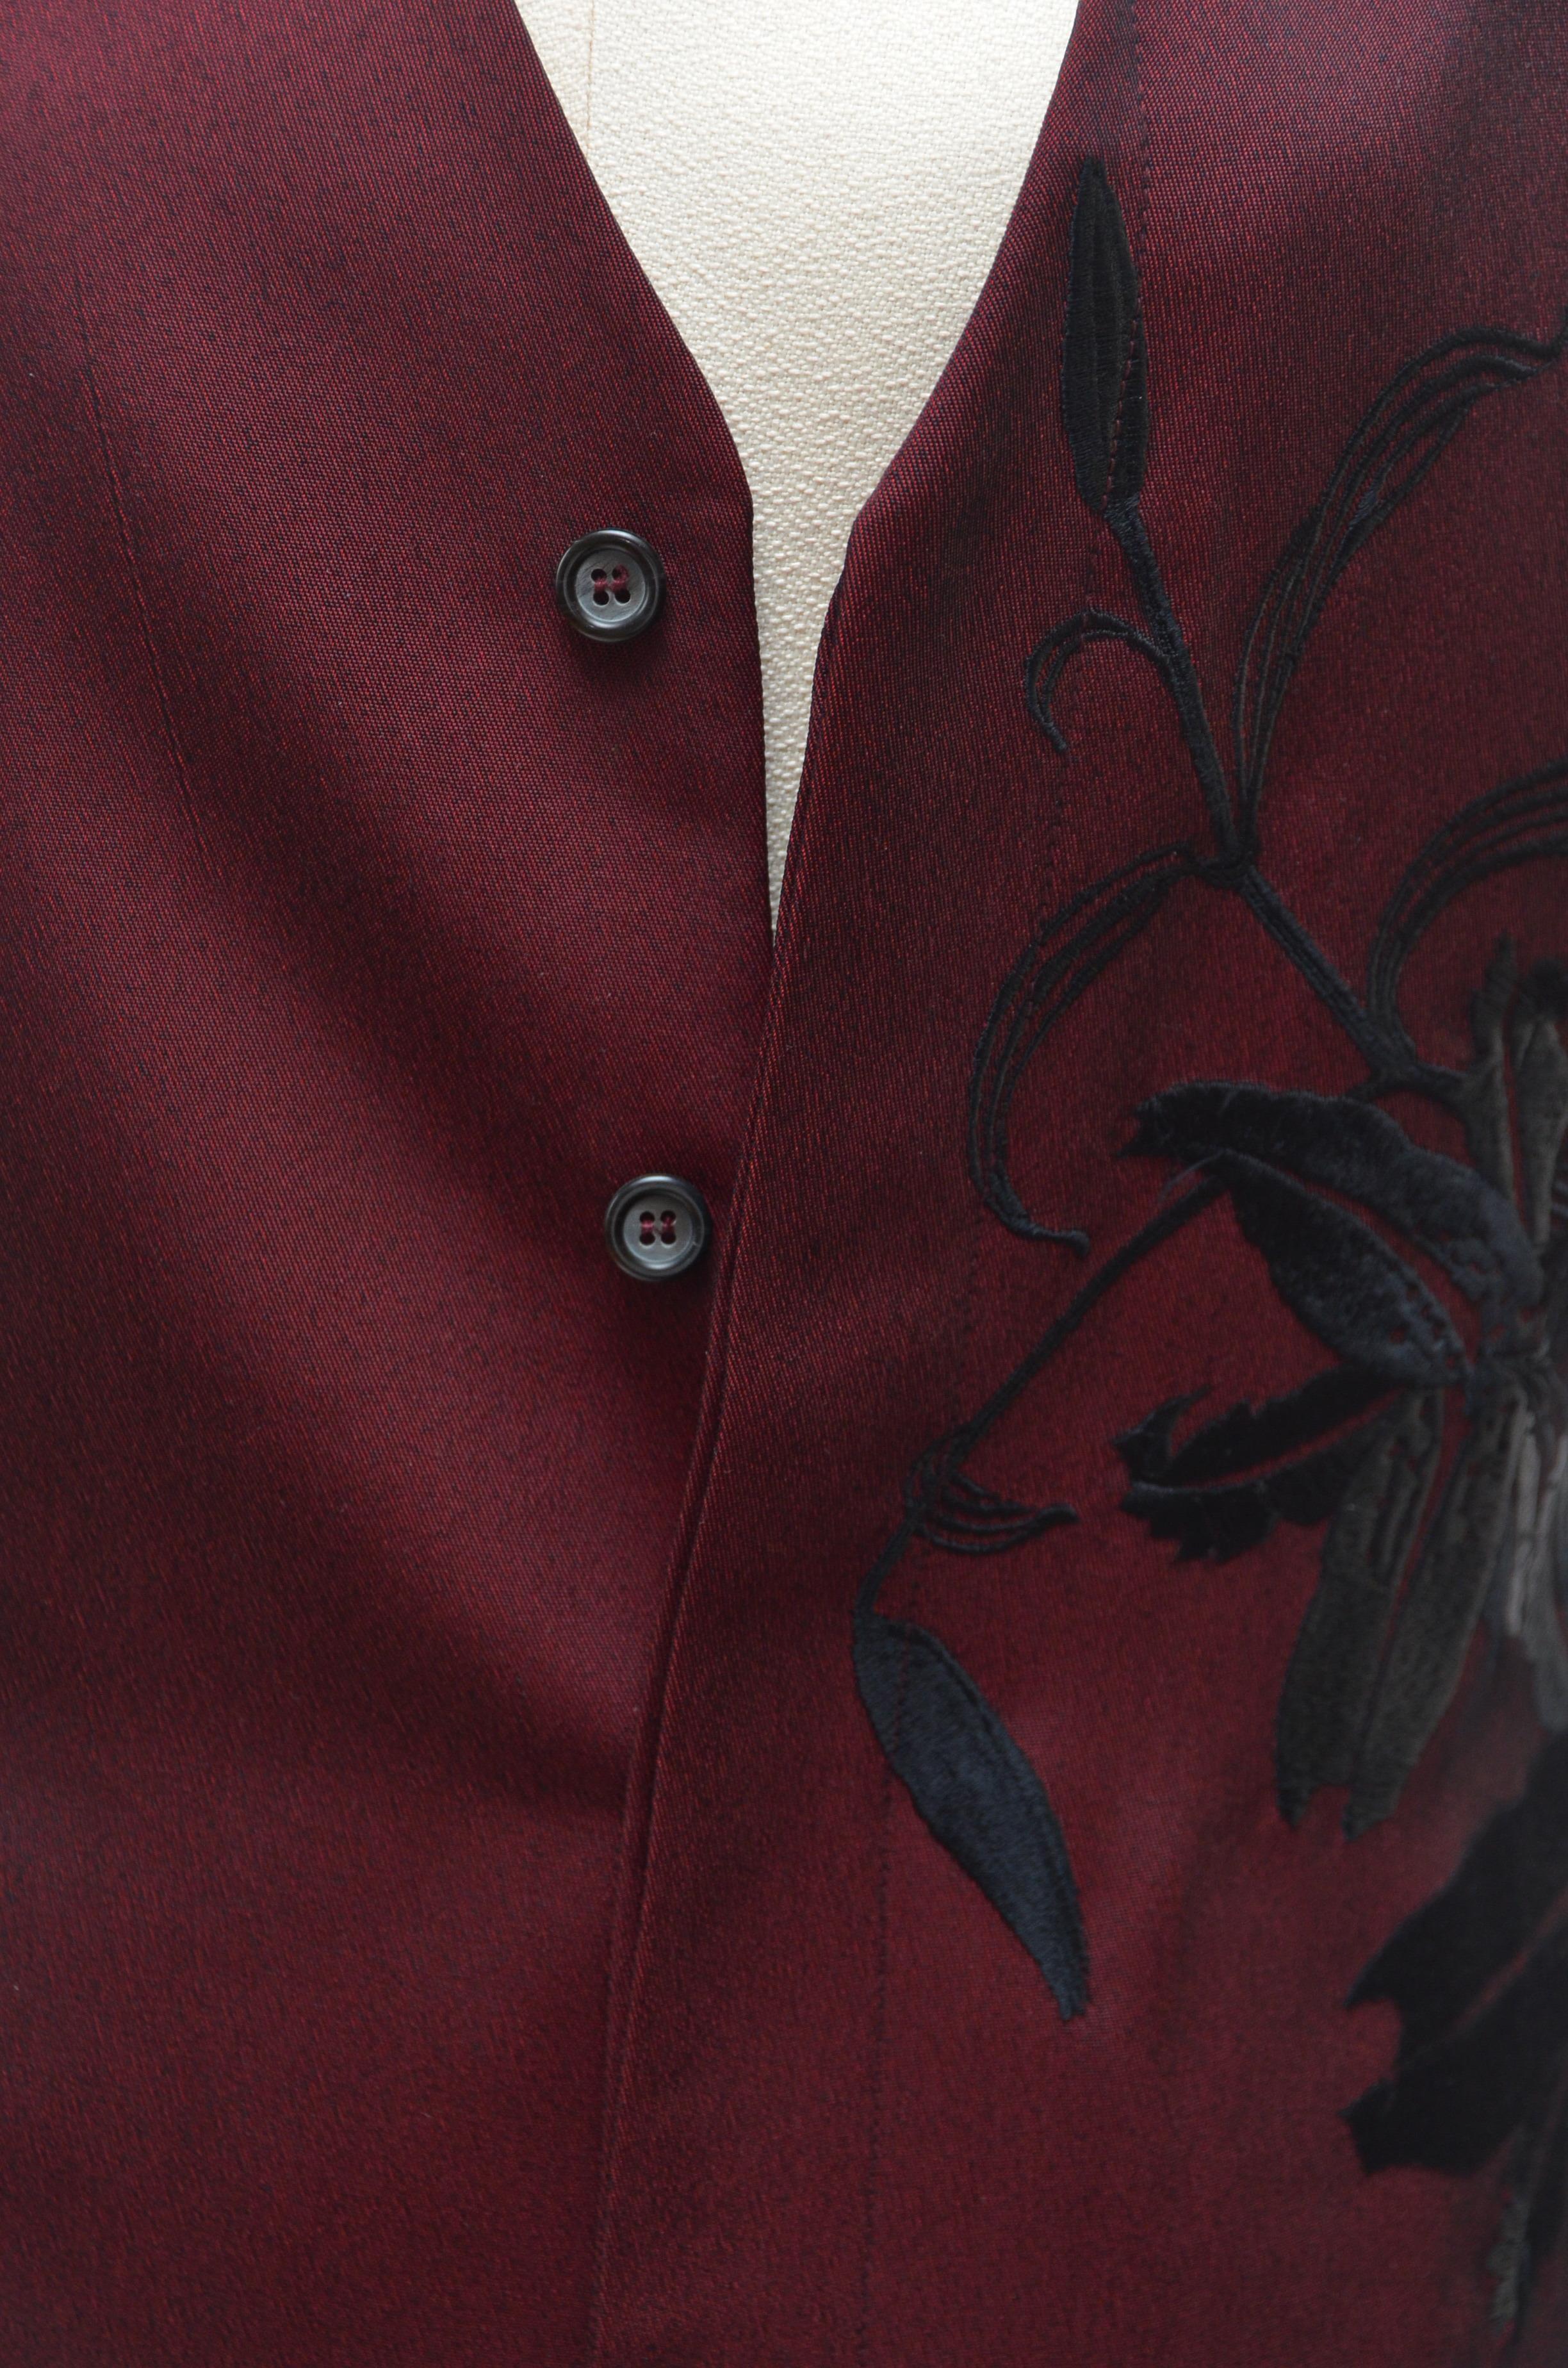 Alexander McQueen Vintage Burgundy Long Embroidered Vest Jacket   1